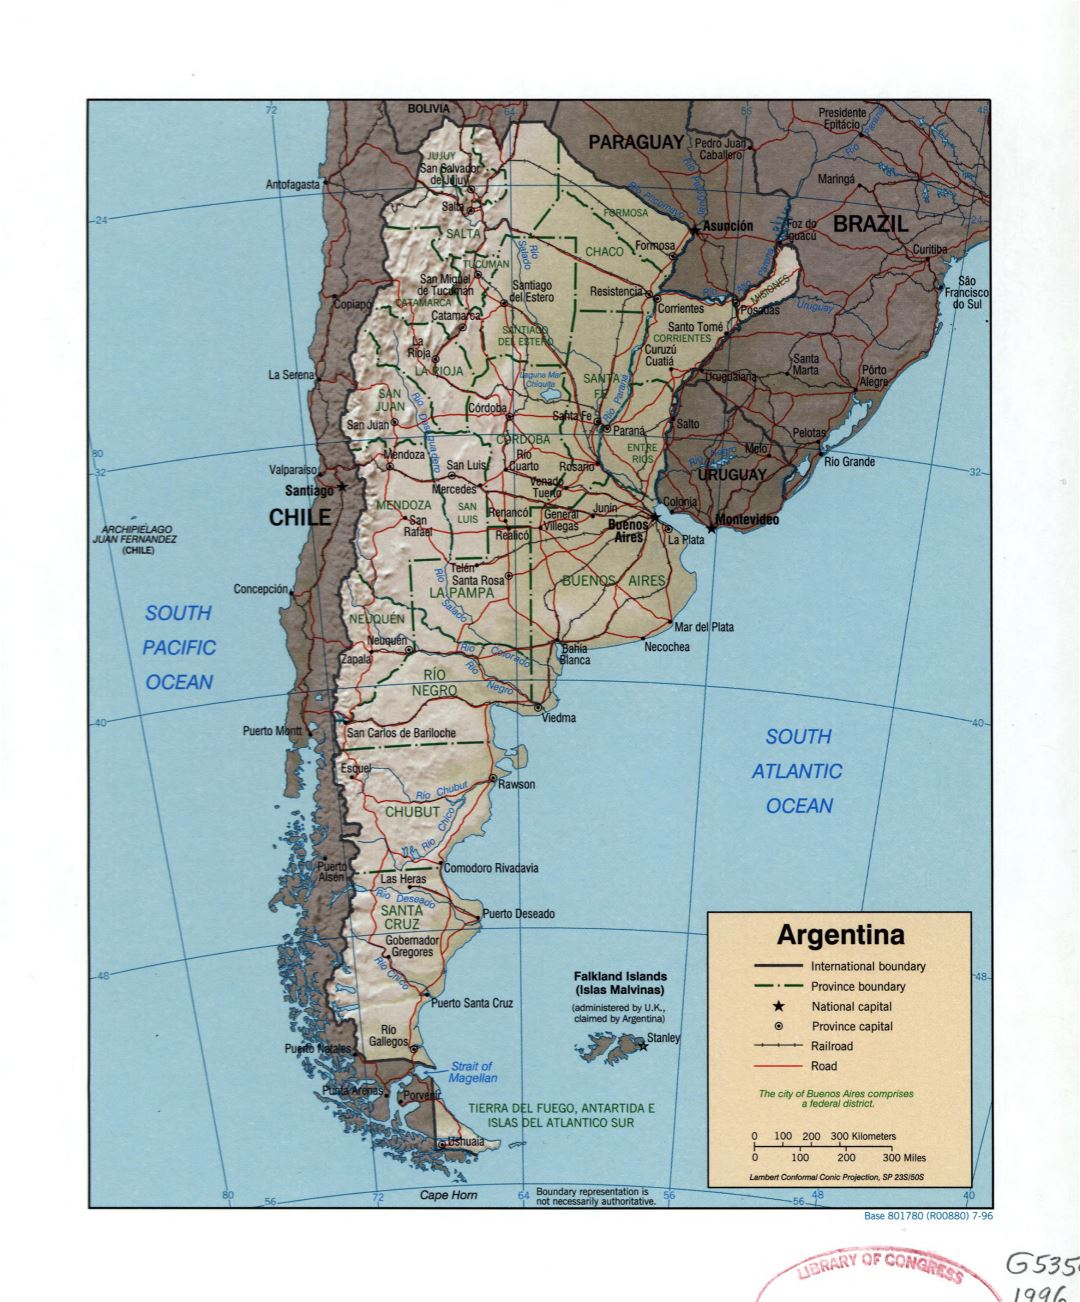 Grande detallado mapa político y administrativo de Argentina con socorro, carreteras, ferrocarriles, ciudades y principales ciudades - 1996